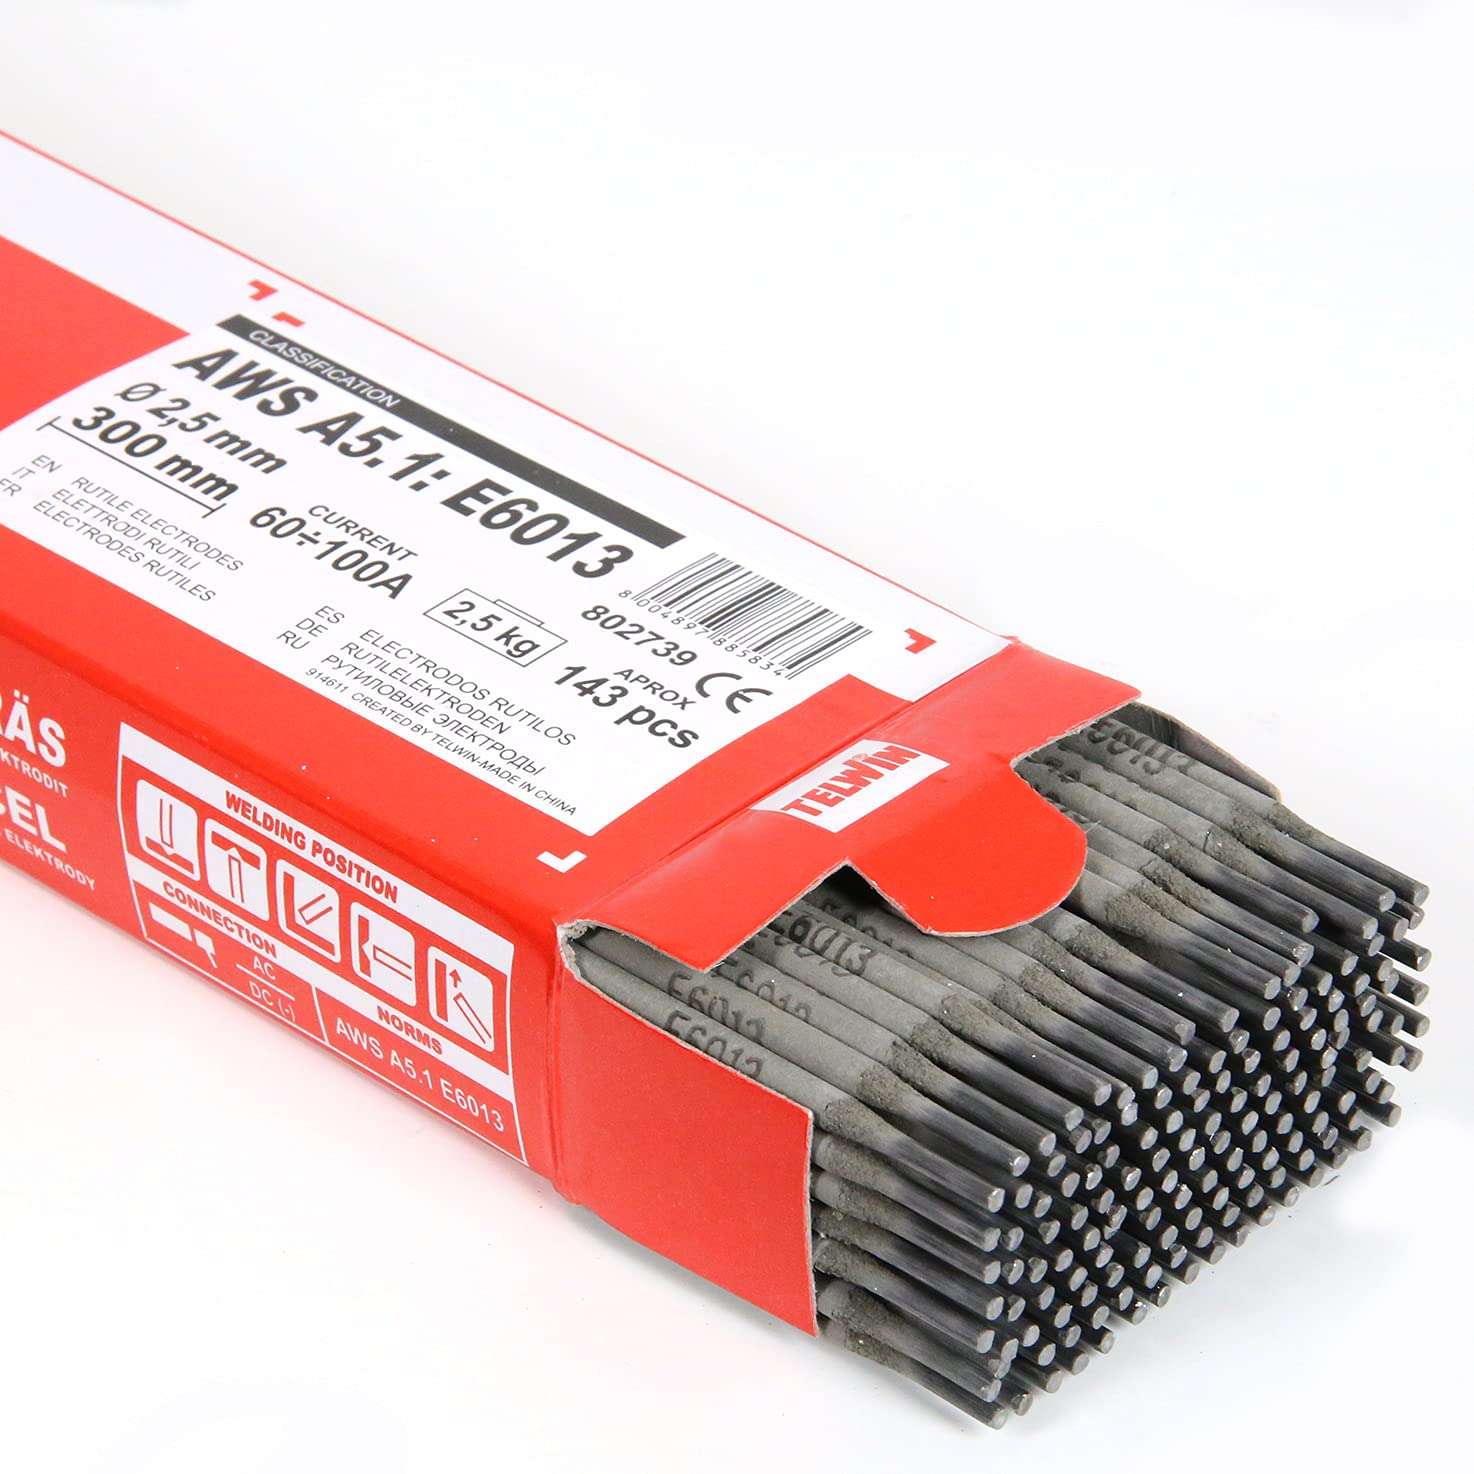 Elettrodi Rutili per Saldatura  2,5 mm 2,5 kg - Telwin - 802739